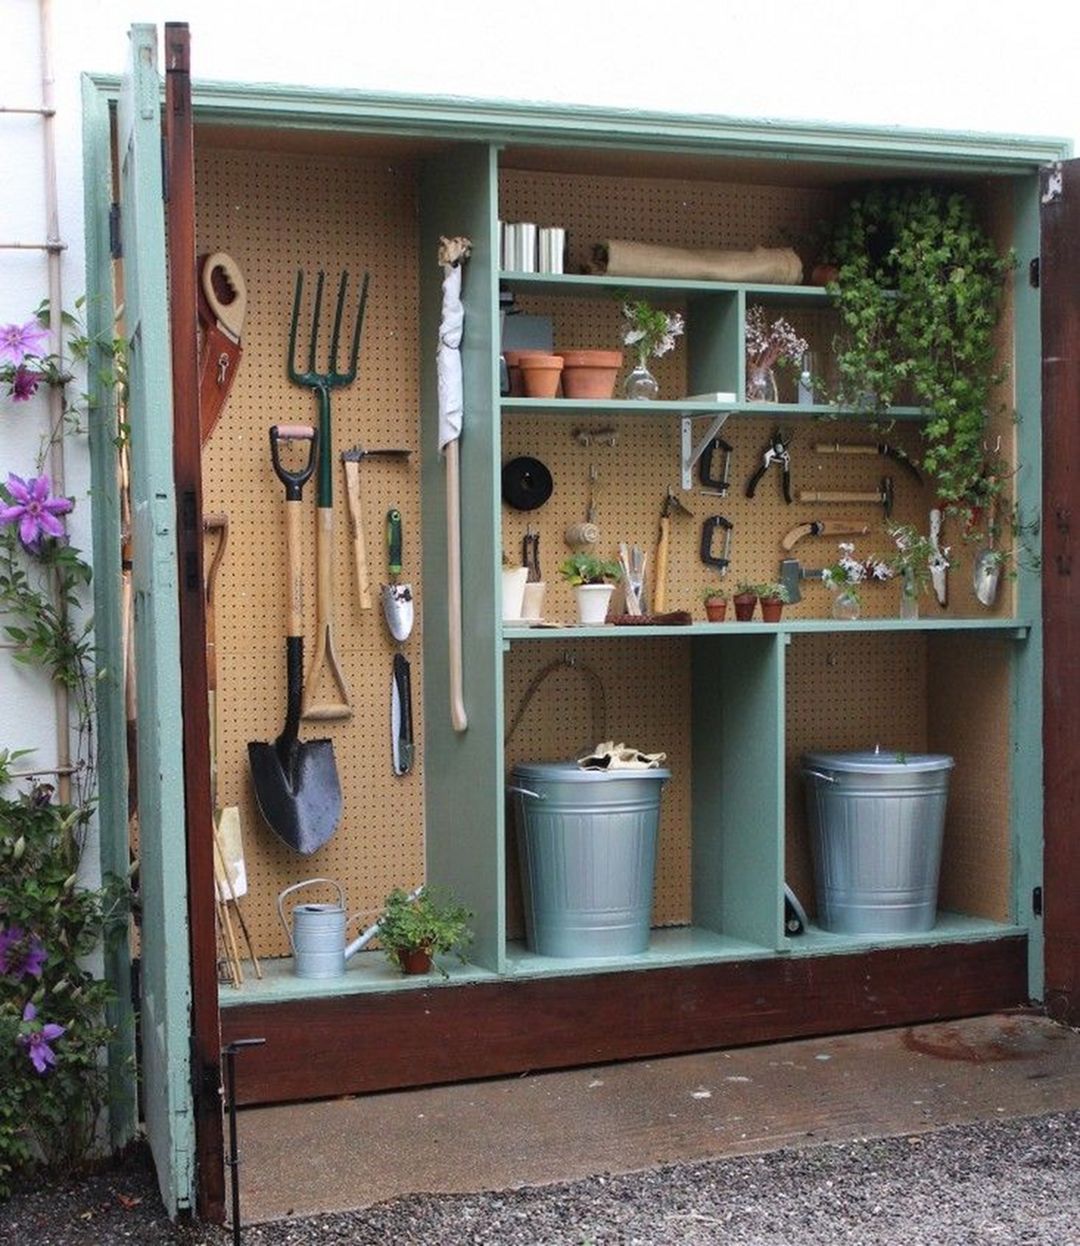 Garden storage shed design ideas